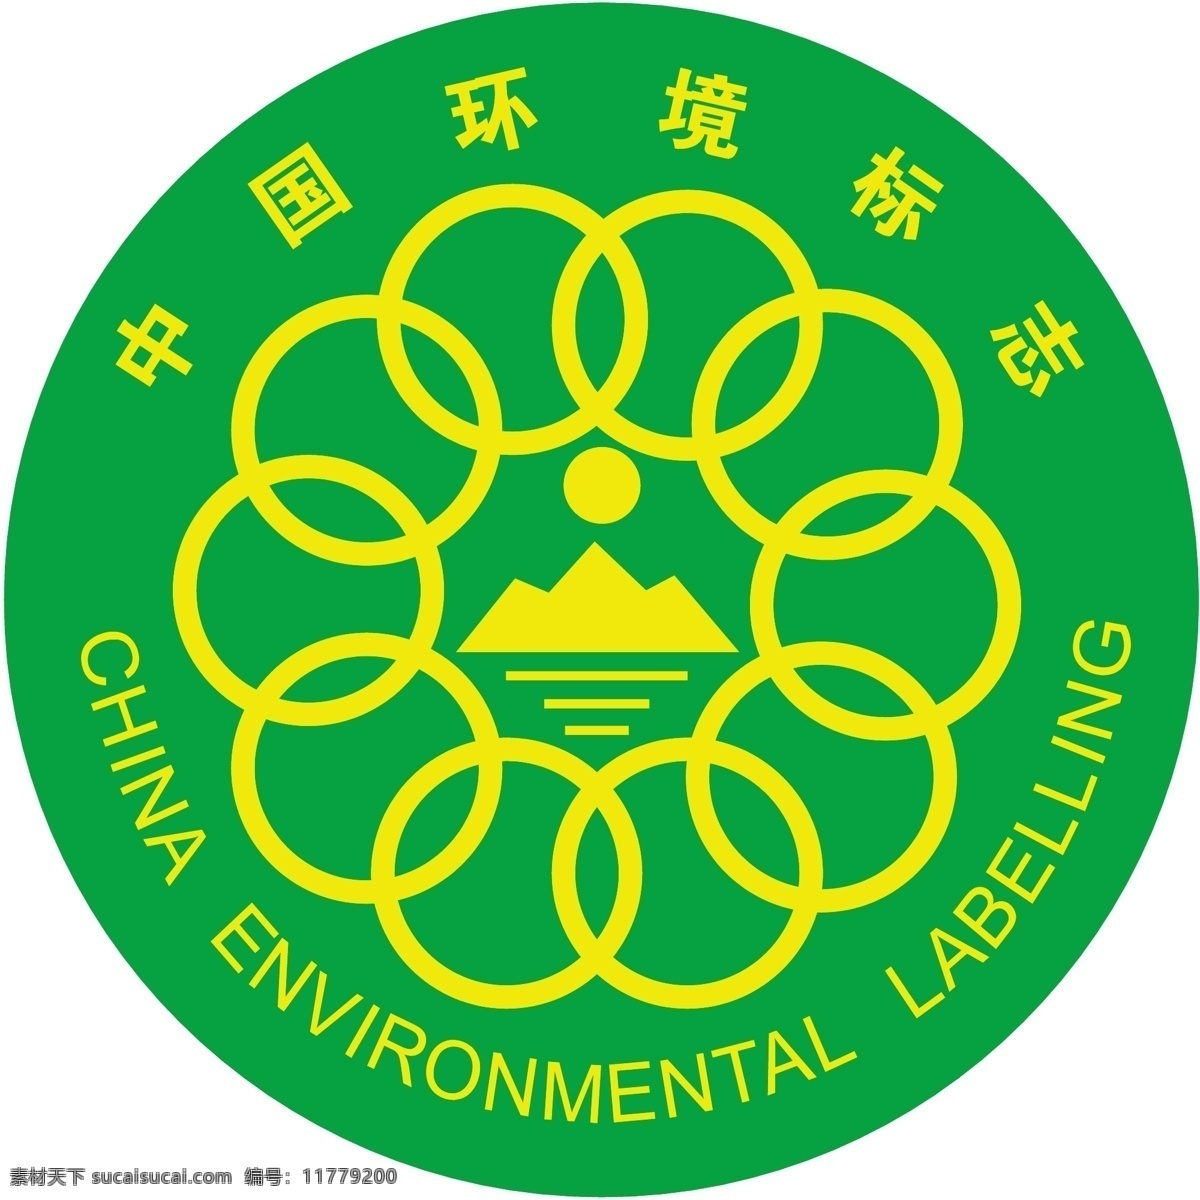 中国 环境标志 绿色底 中国环境标志 黄字 矢量图 其他矢量图